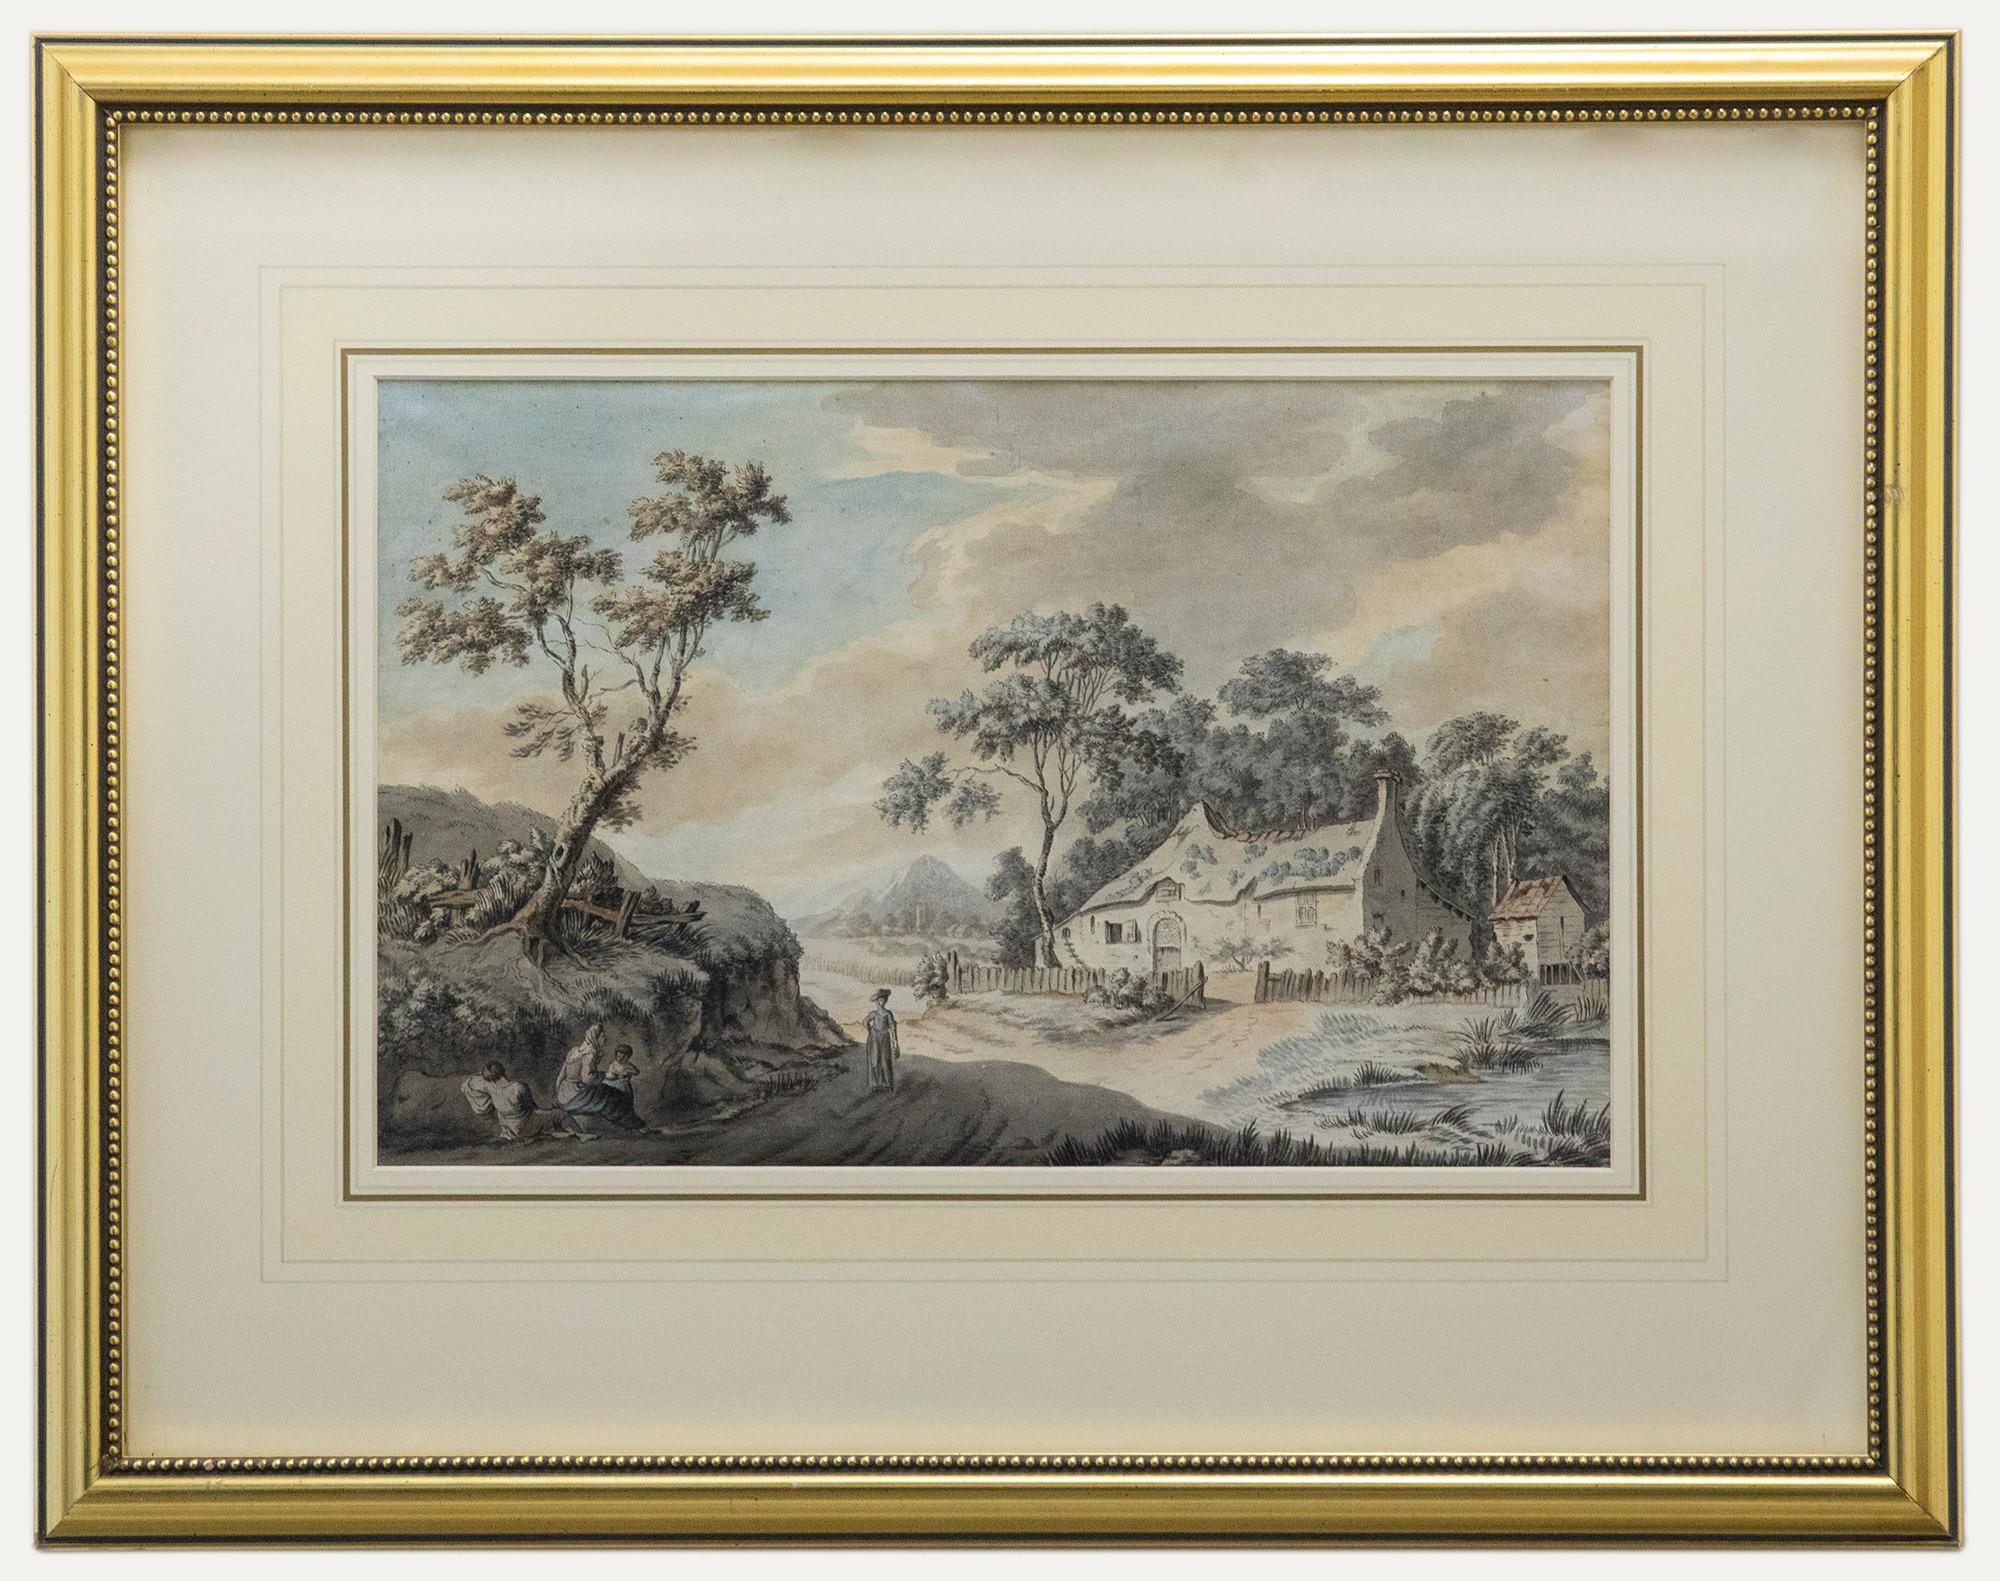 Unknown Landscape Art - Joshua Gosselin (1739-1813) - 1772 Watercolour, The Wayside Cottage